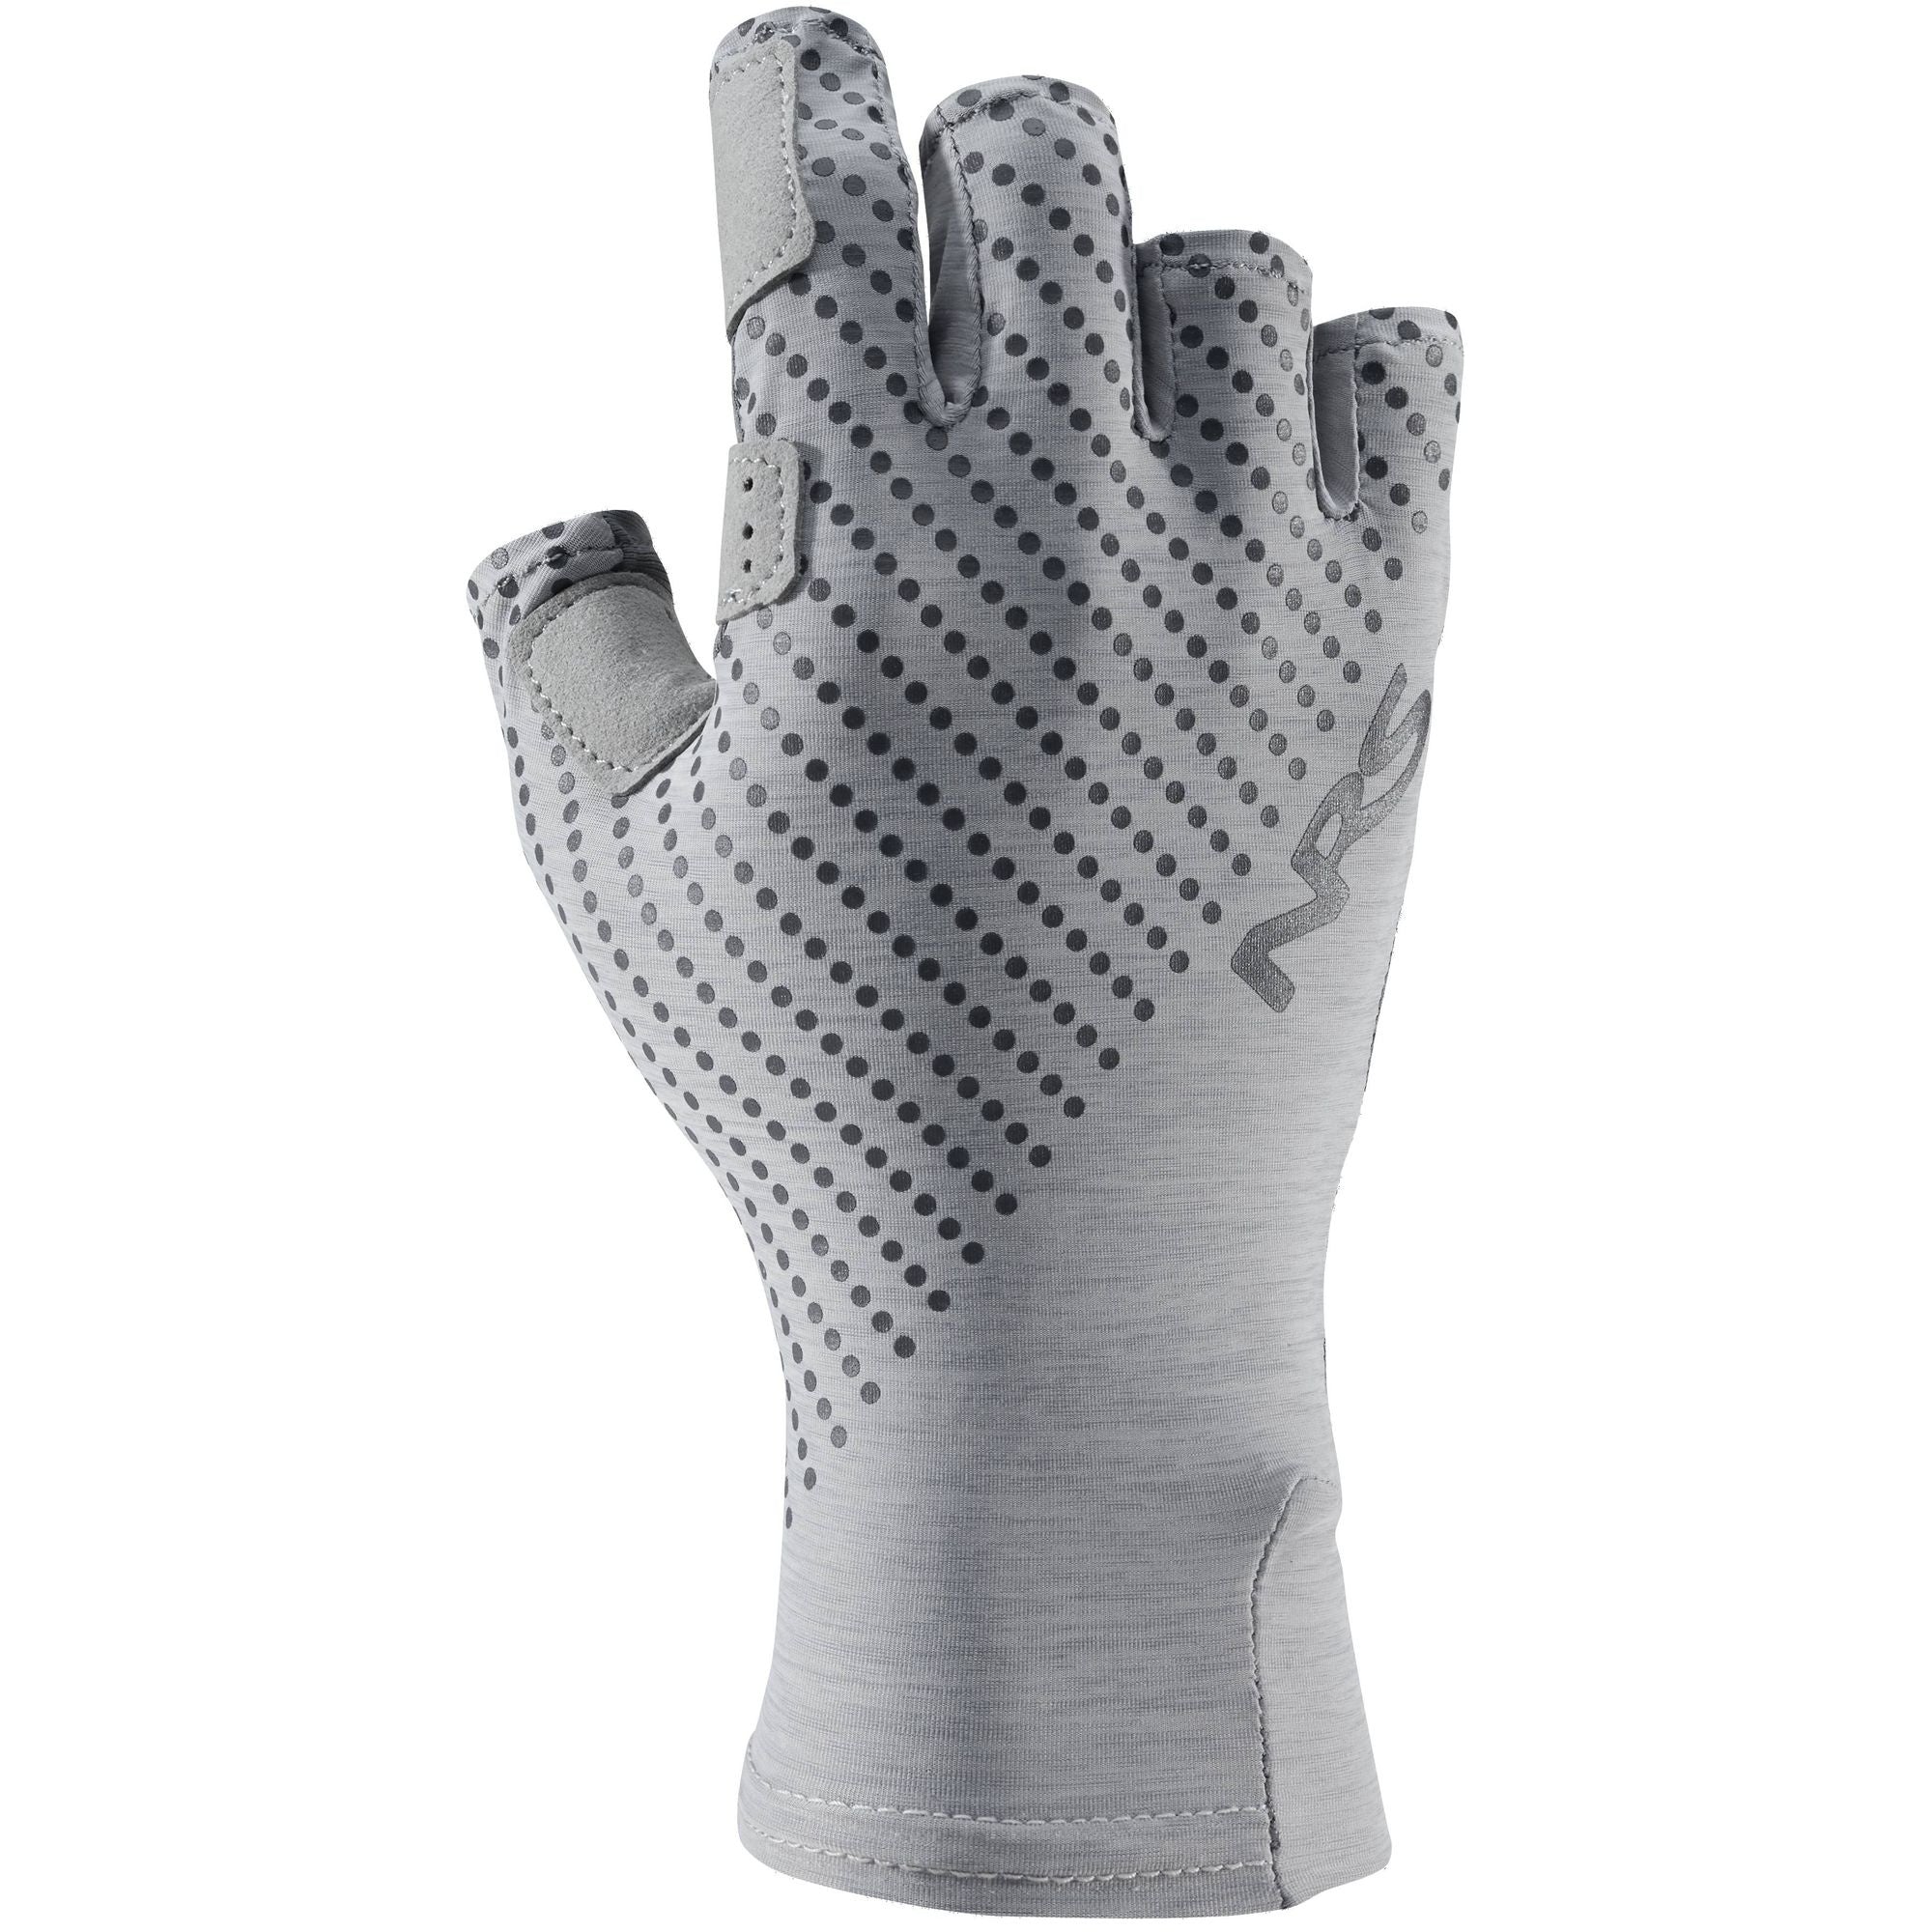 NRS - Skelton Gloves